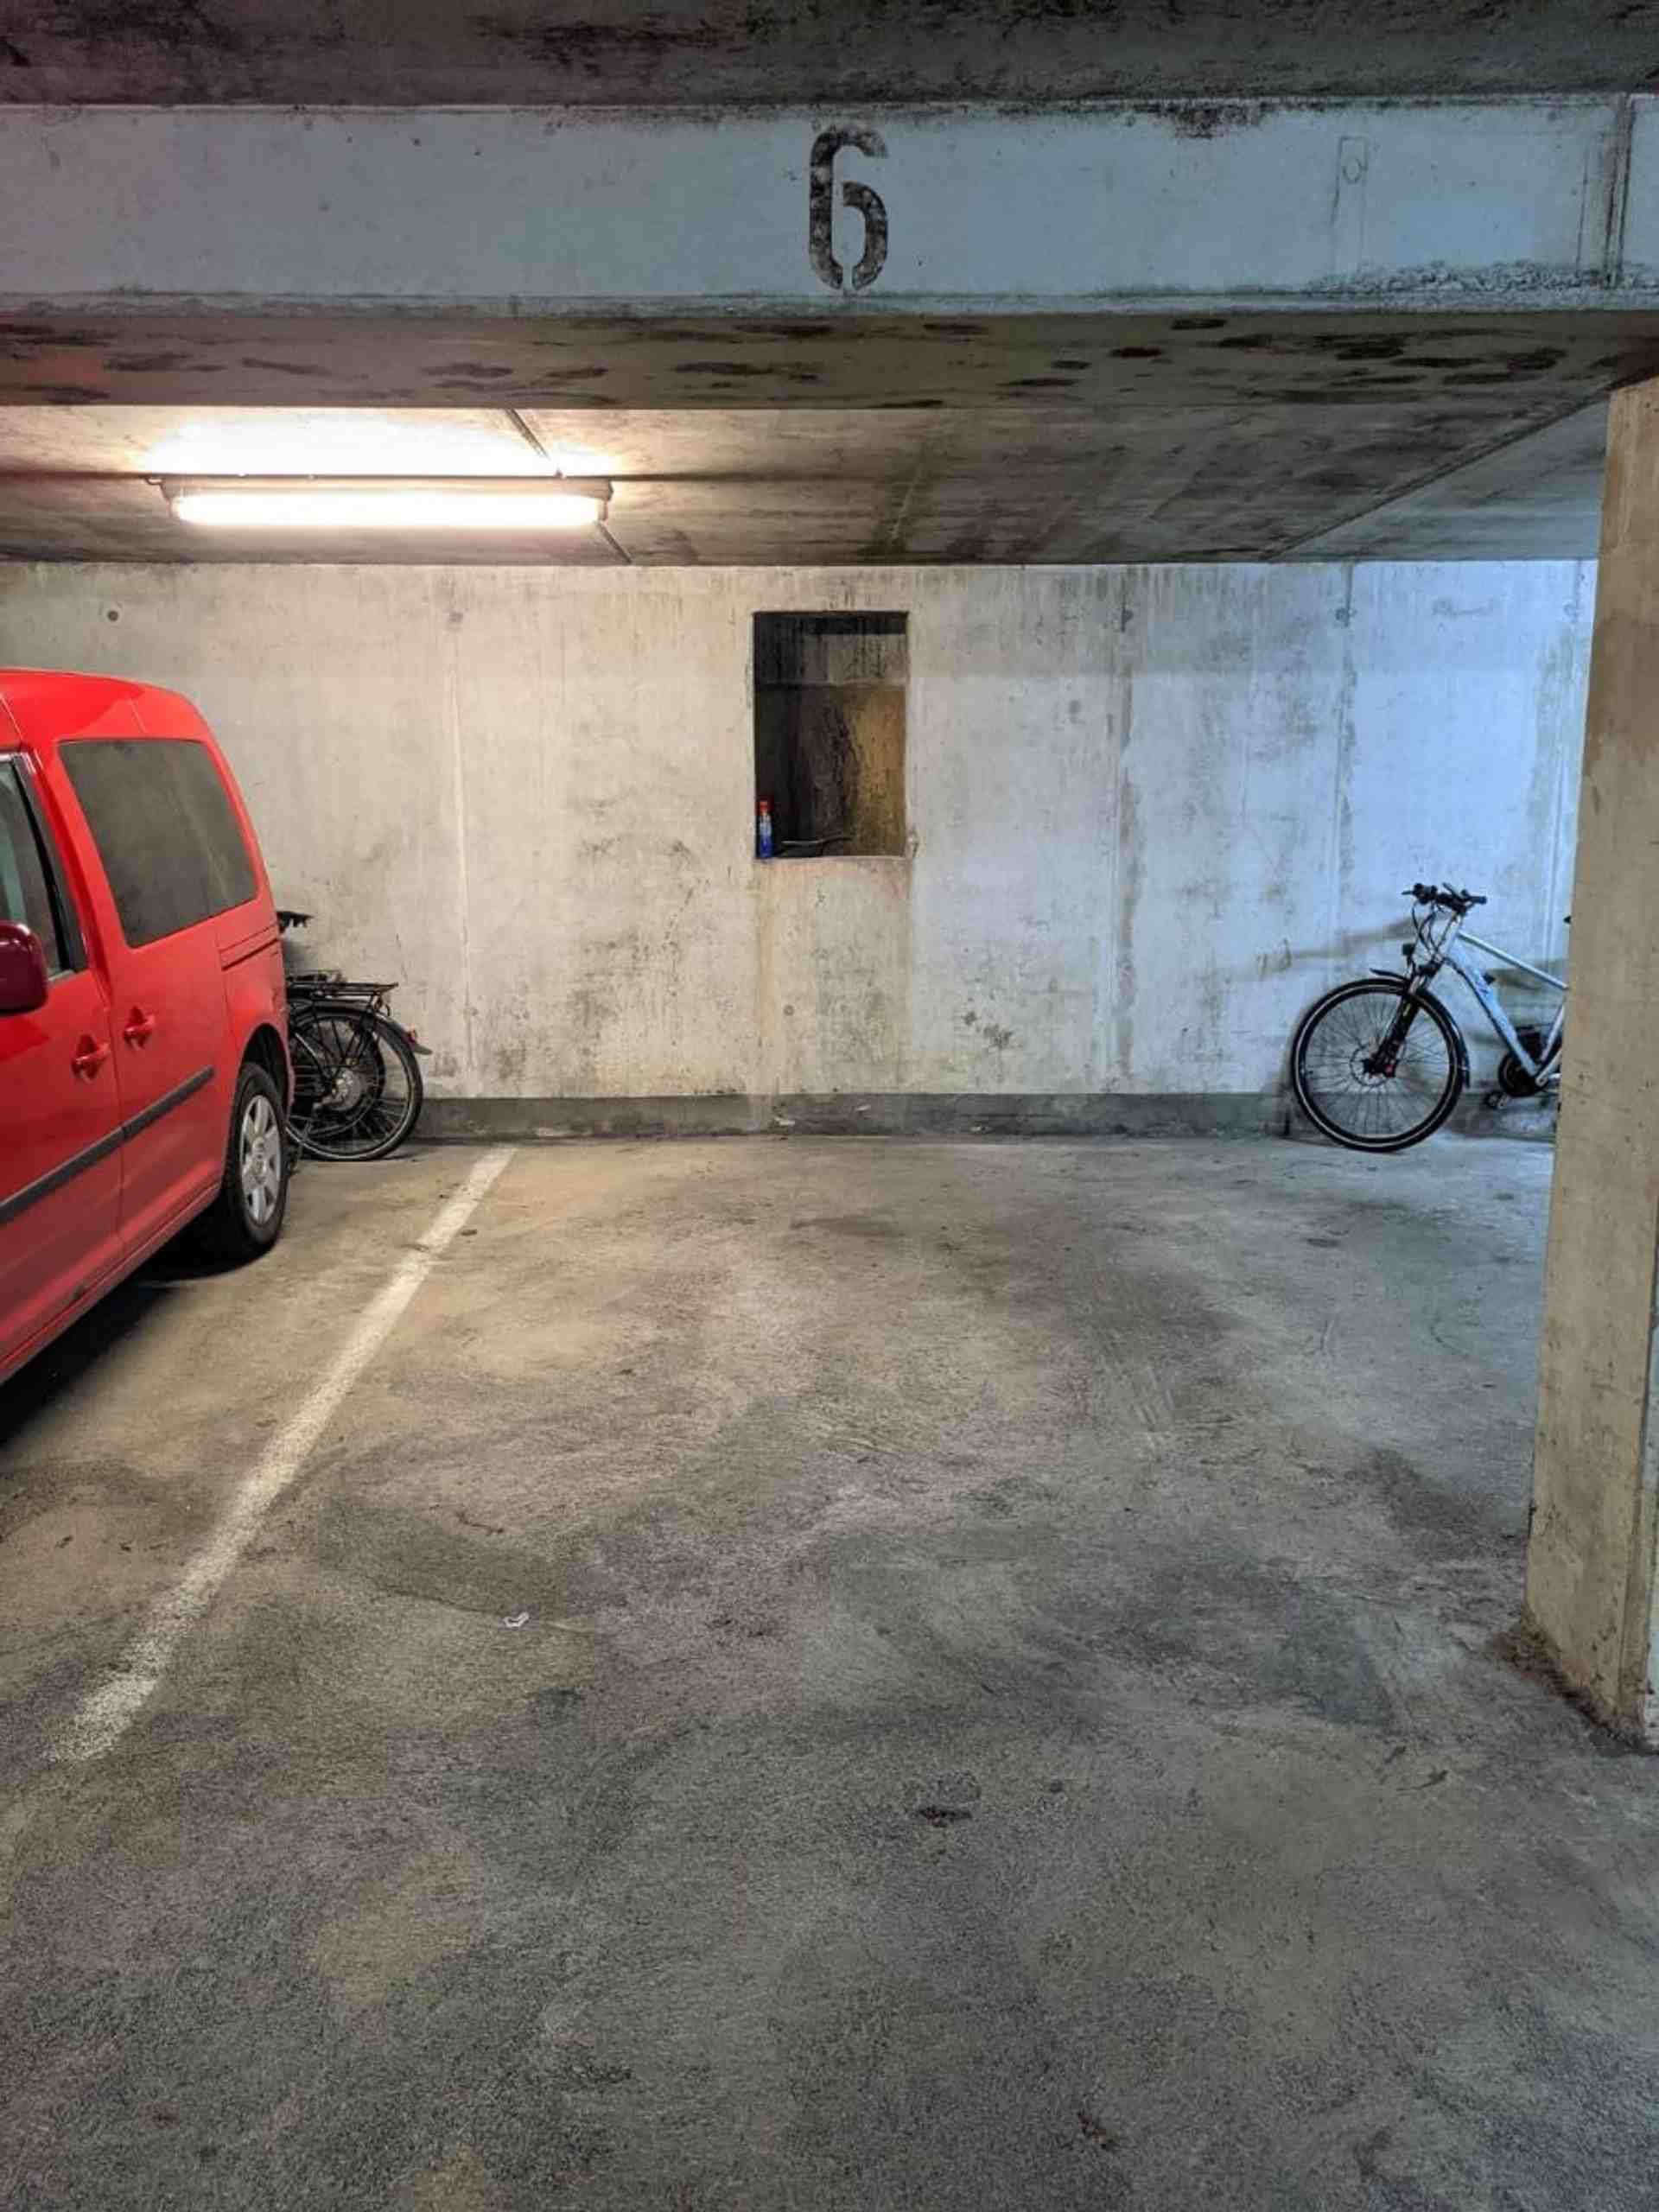 Underground Garage Space available for rent - Plümelstraße, 85051 Ingolstadt - Photo 1 of 2